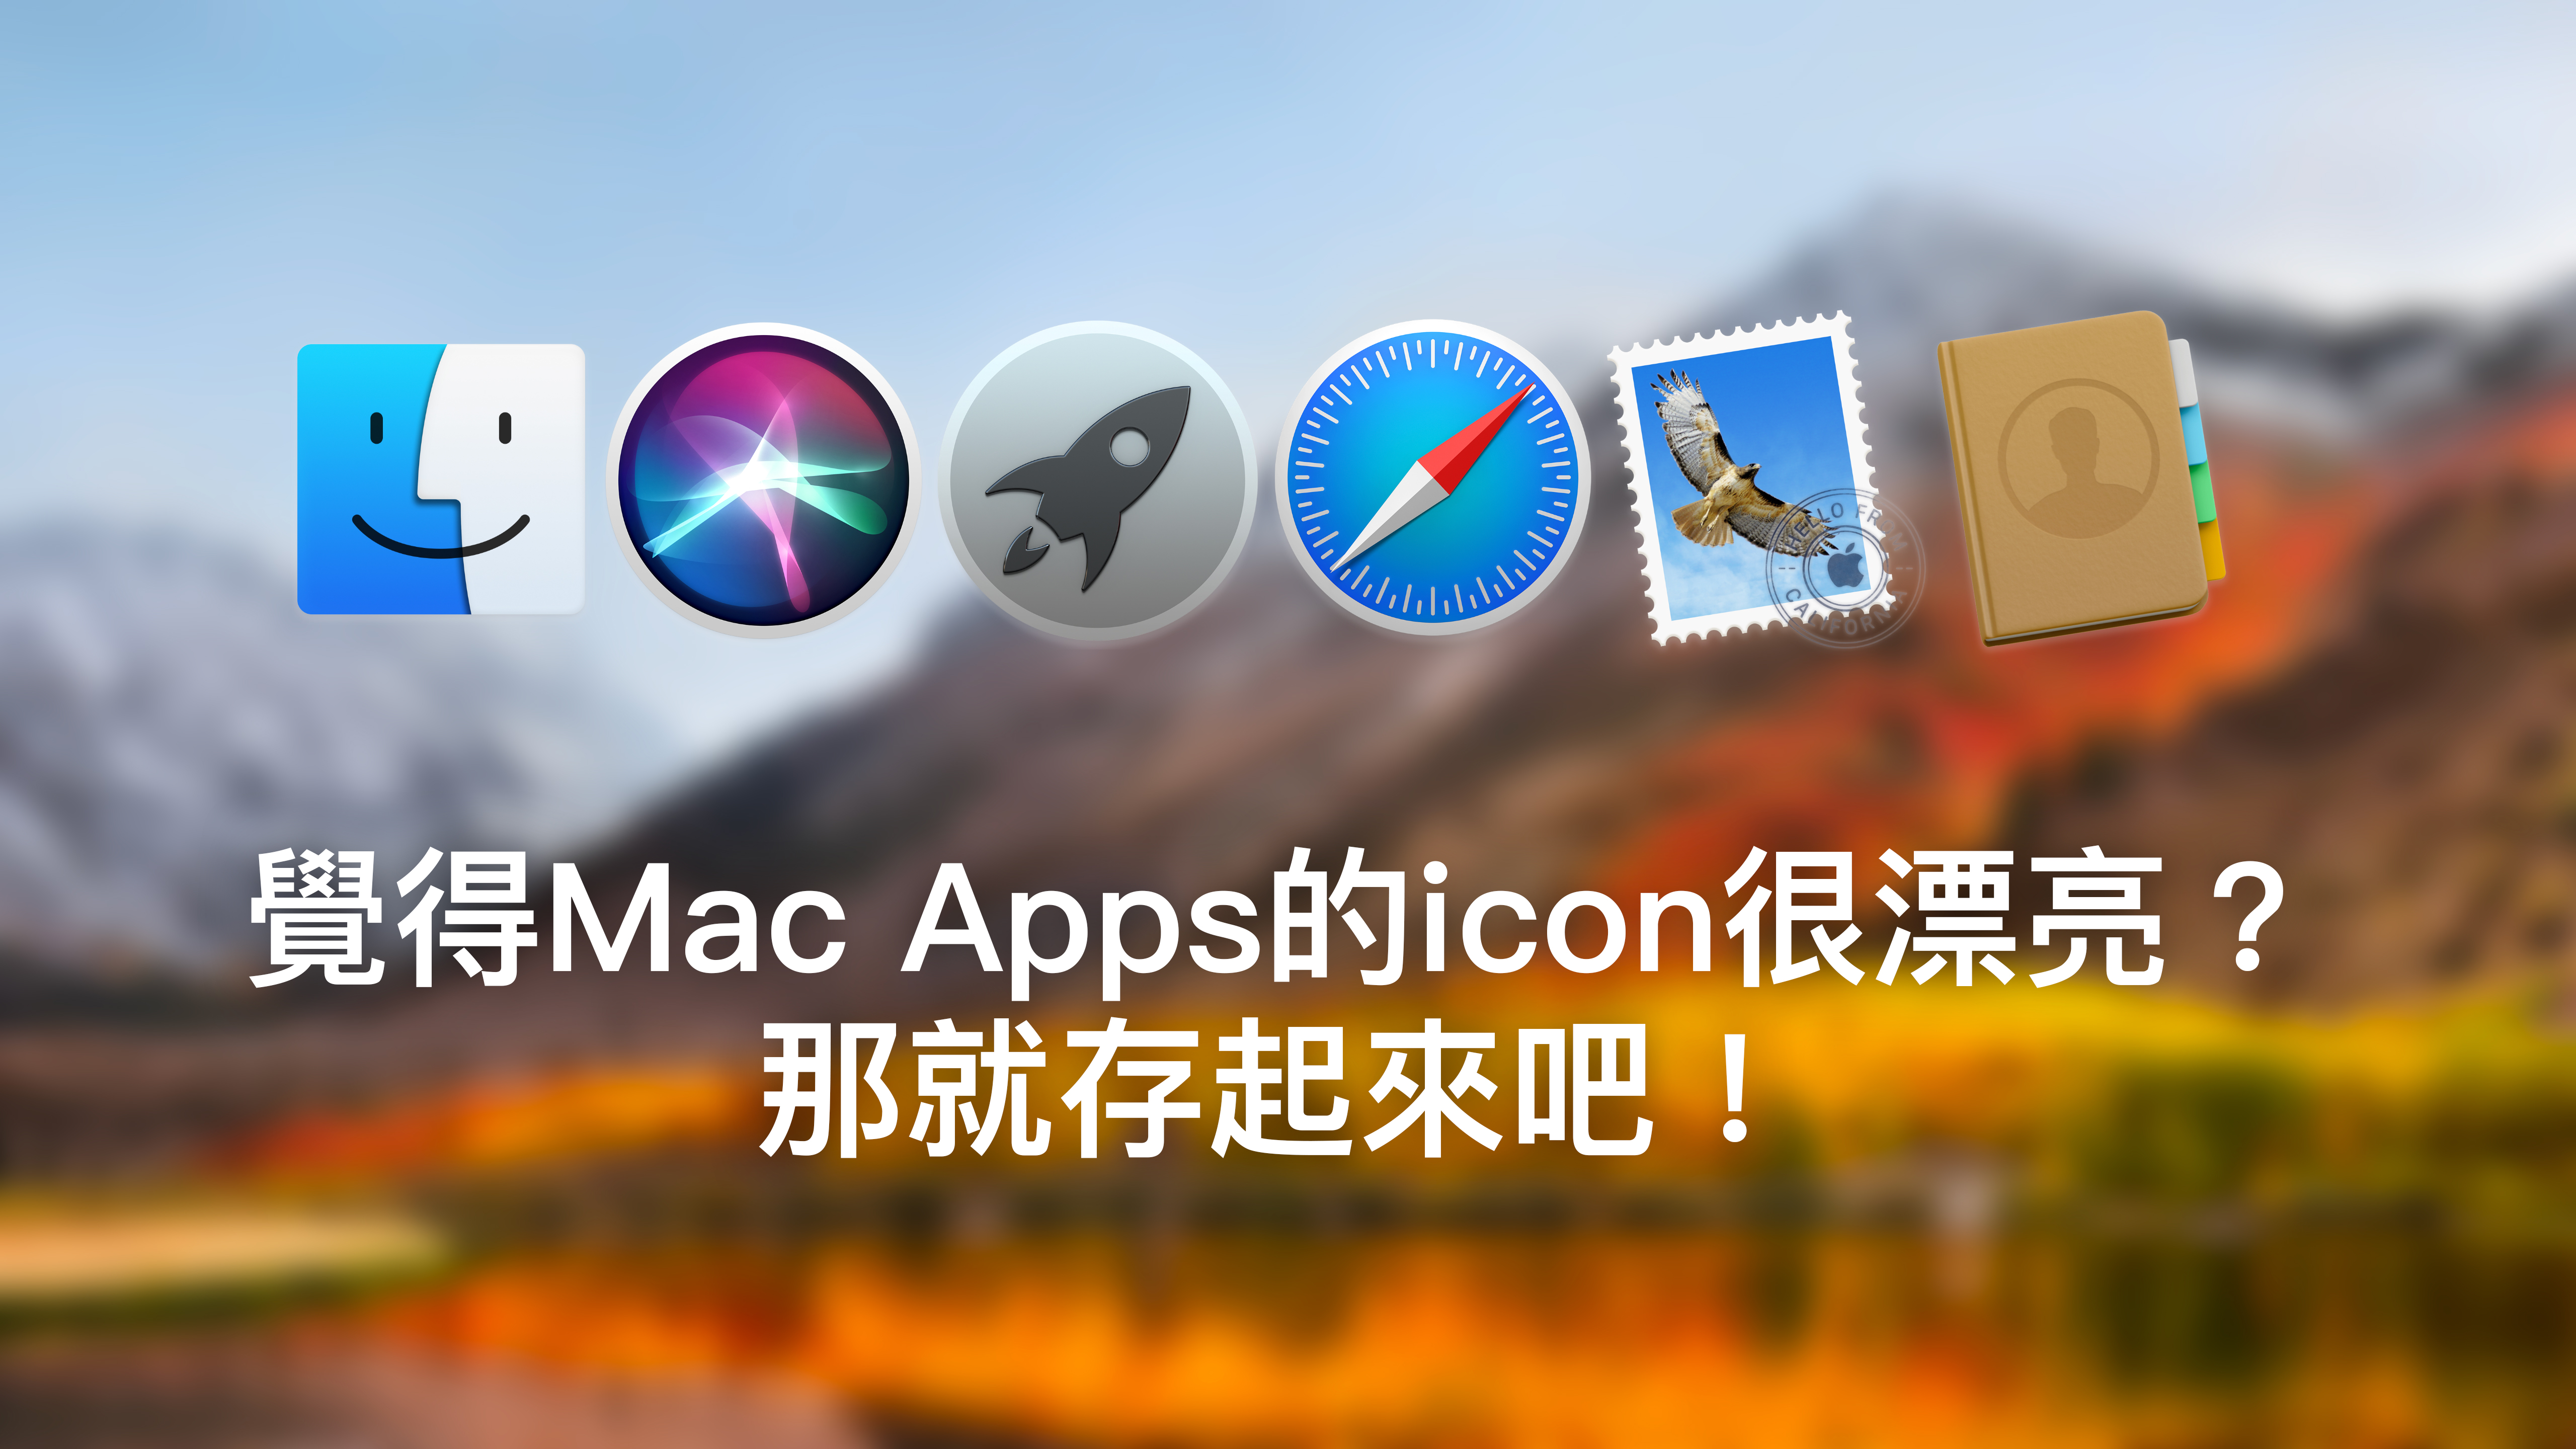 覺得Mac Apps的圖示很漂亮？那就存起來吧！